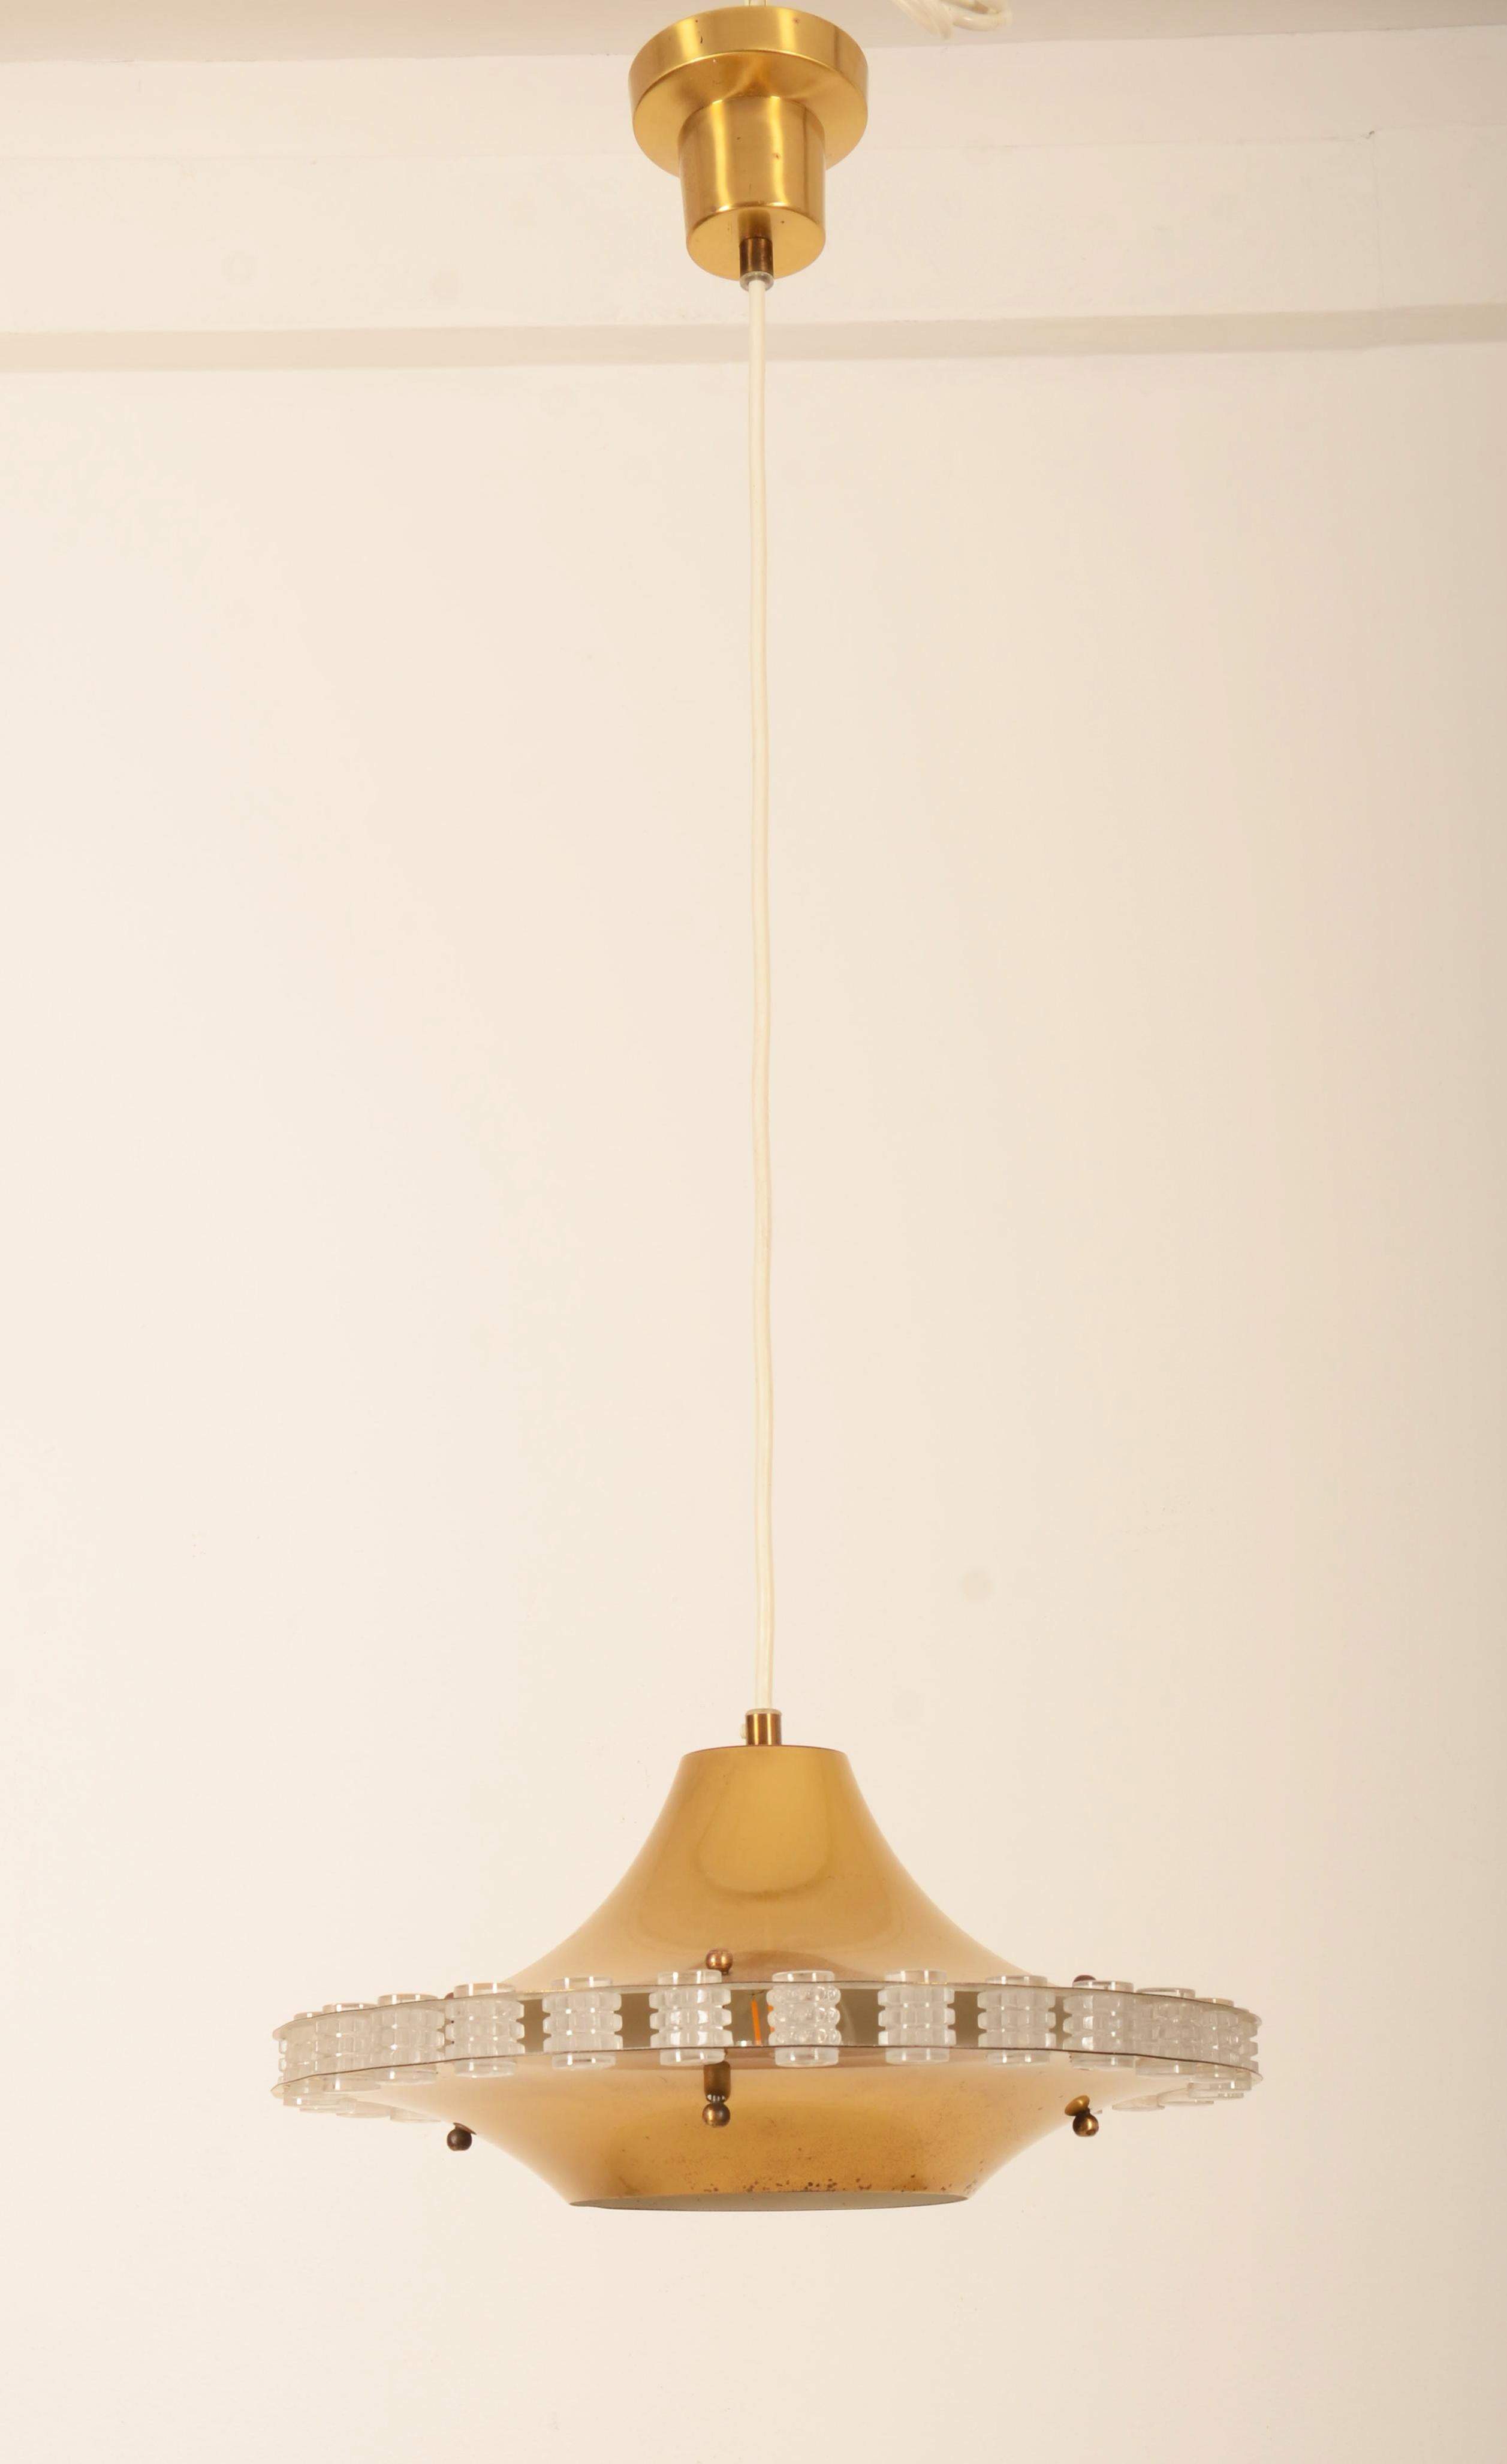 Deckenlampe aus Messing mit durchbrochenem Glasdekor. Deckentasse mit der Aufschrift Philips.
Berichten zufolge wurde ein Prototyp für Ateljé Lyktan entwickelt, der jedoch nicht in Produktion ging.
Abmessungen Lampe allein: Ø 35 cm, Höhe 18 cm.